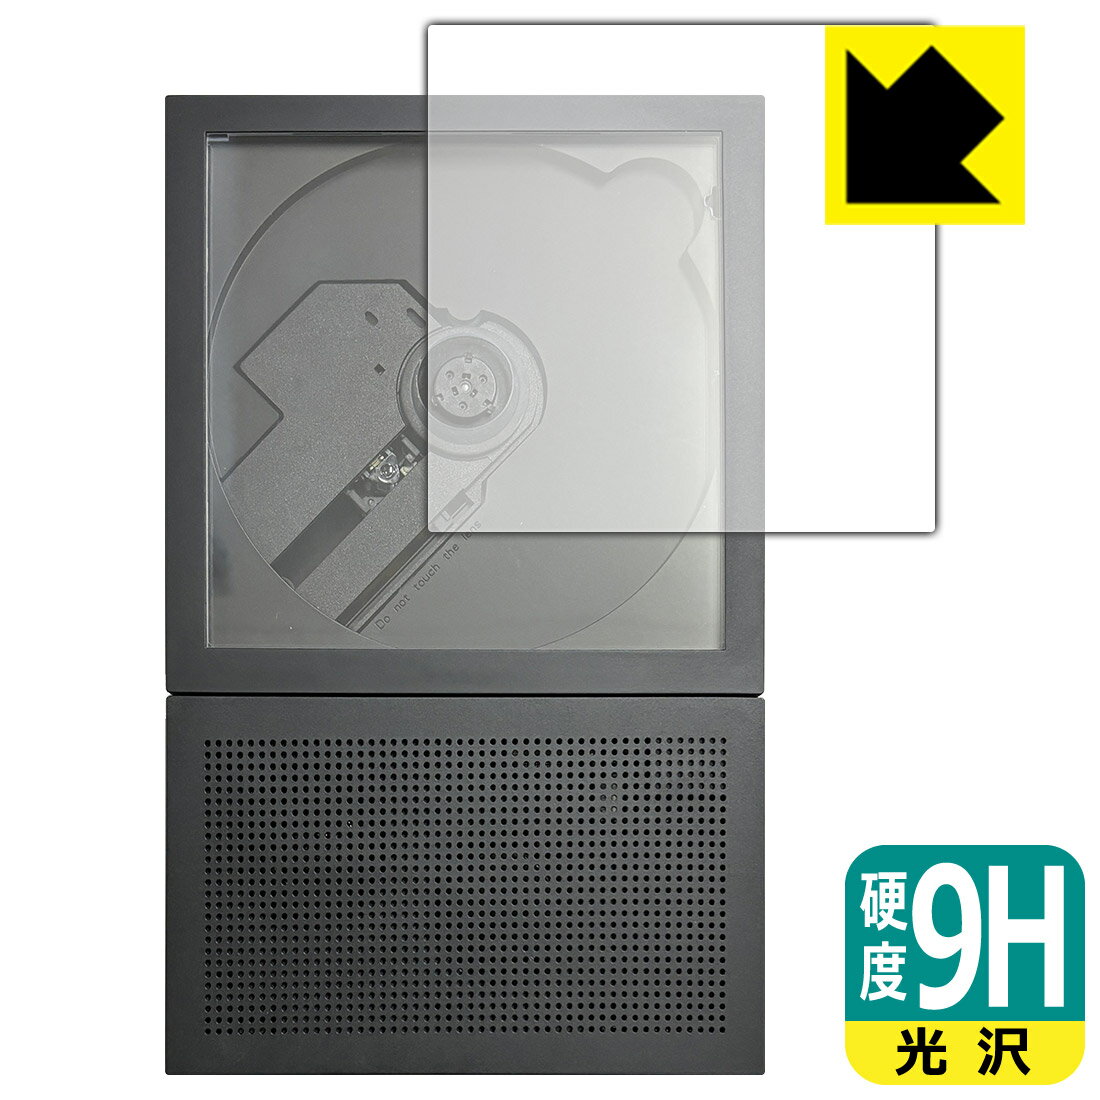 【スーパーSALE 10%OFF】9H高硬度【光沢】保護フィルム km5 Instant Disk Audio-CP2 日本製 自社製造直販